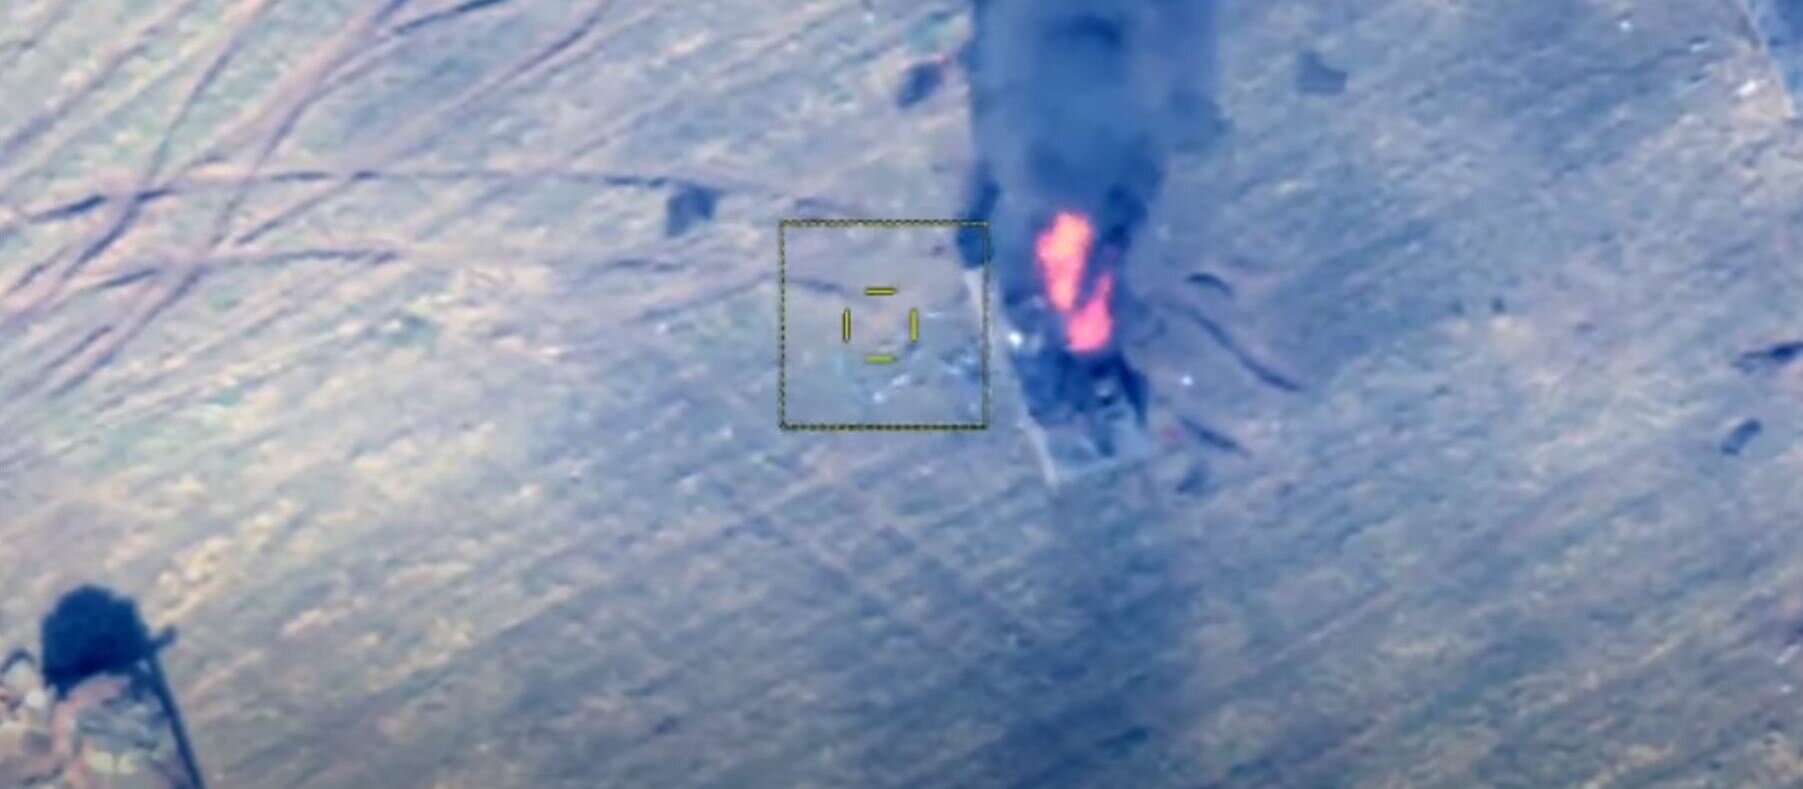 Азербайджаснкая армия зафиксировала на видео сокрушение армянских танков в Карабахе накануне перемирия 